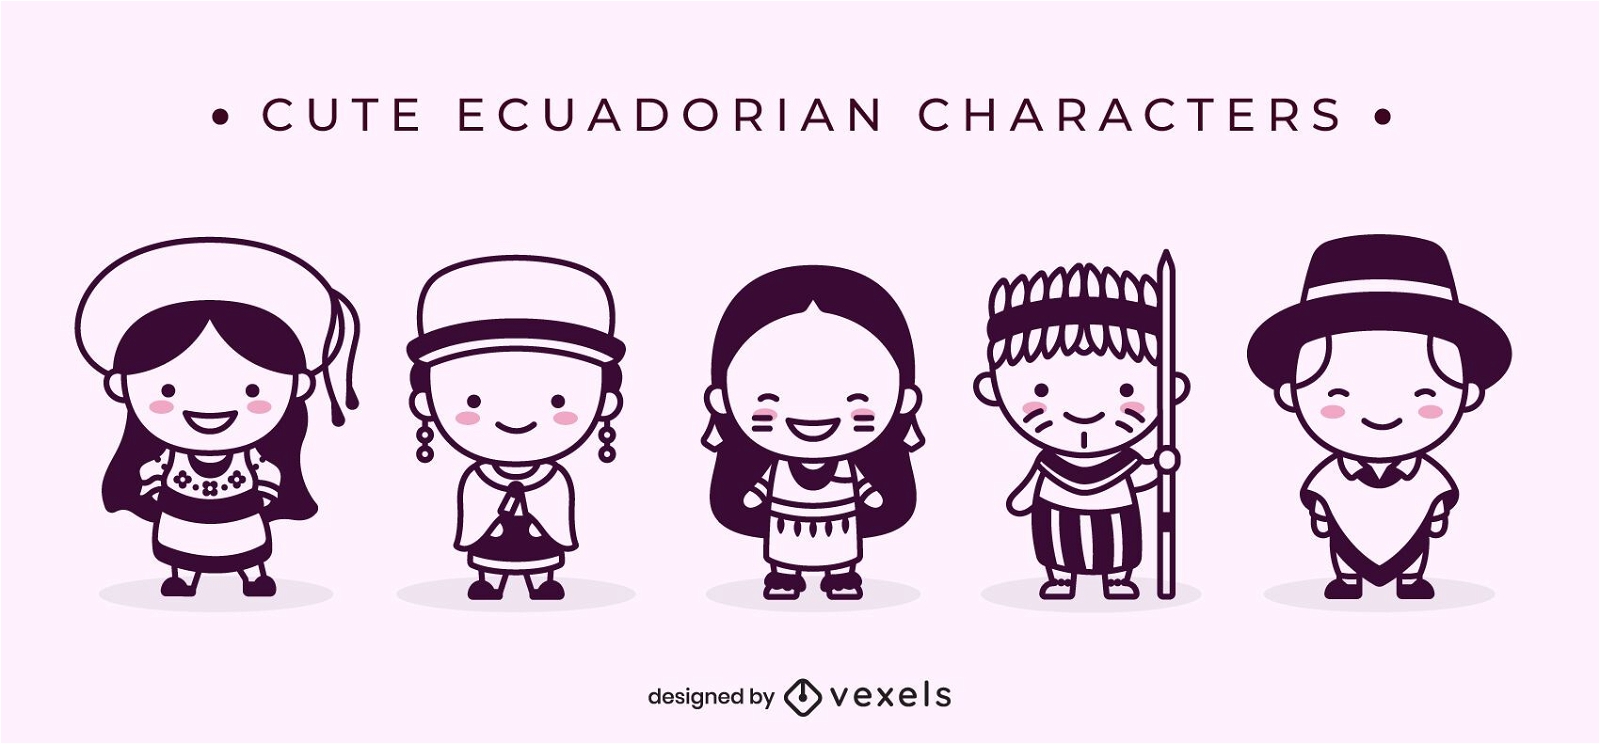 Personagens com tra?os equatorianos fofos